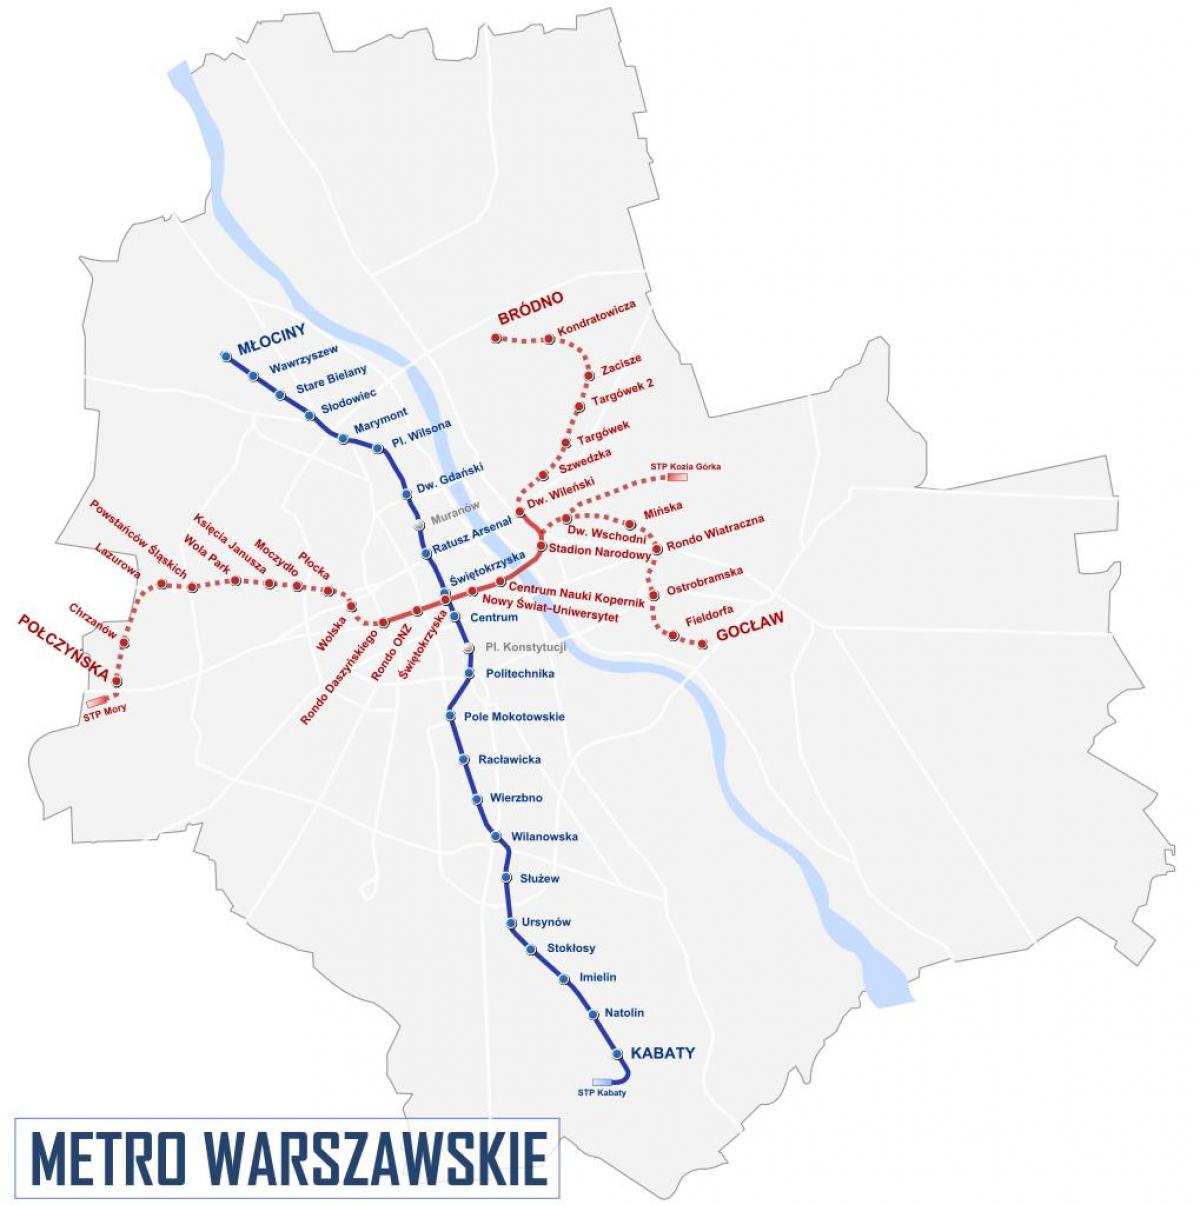 מפת המטרו ורשה